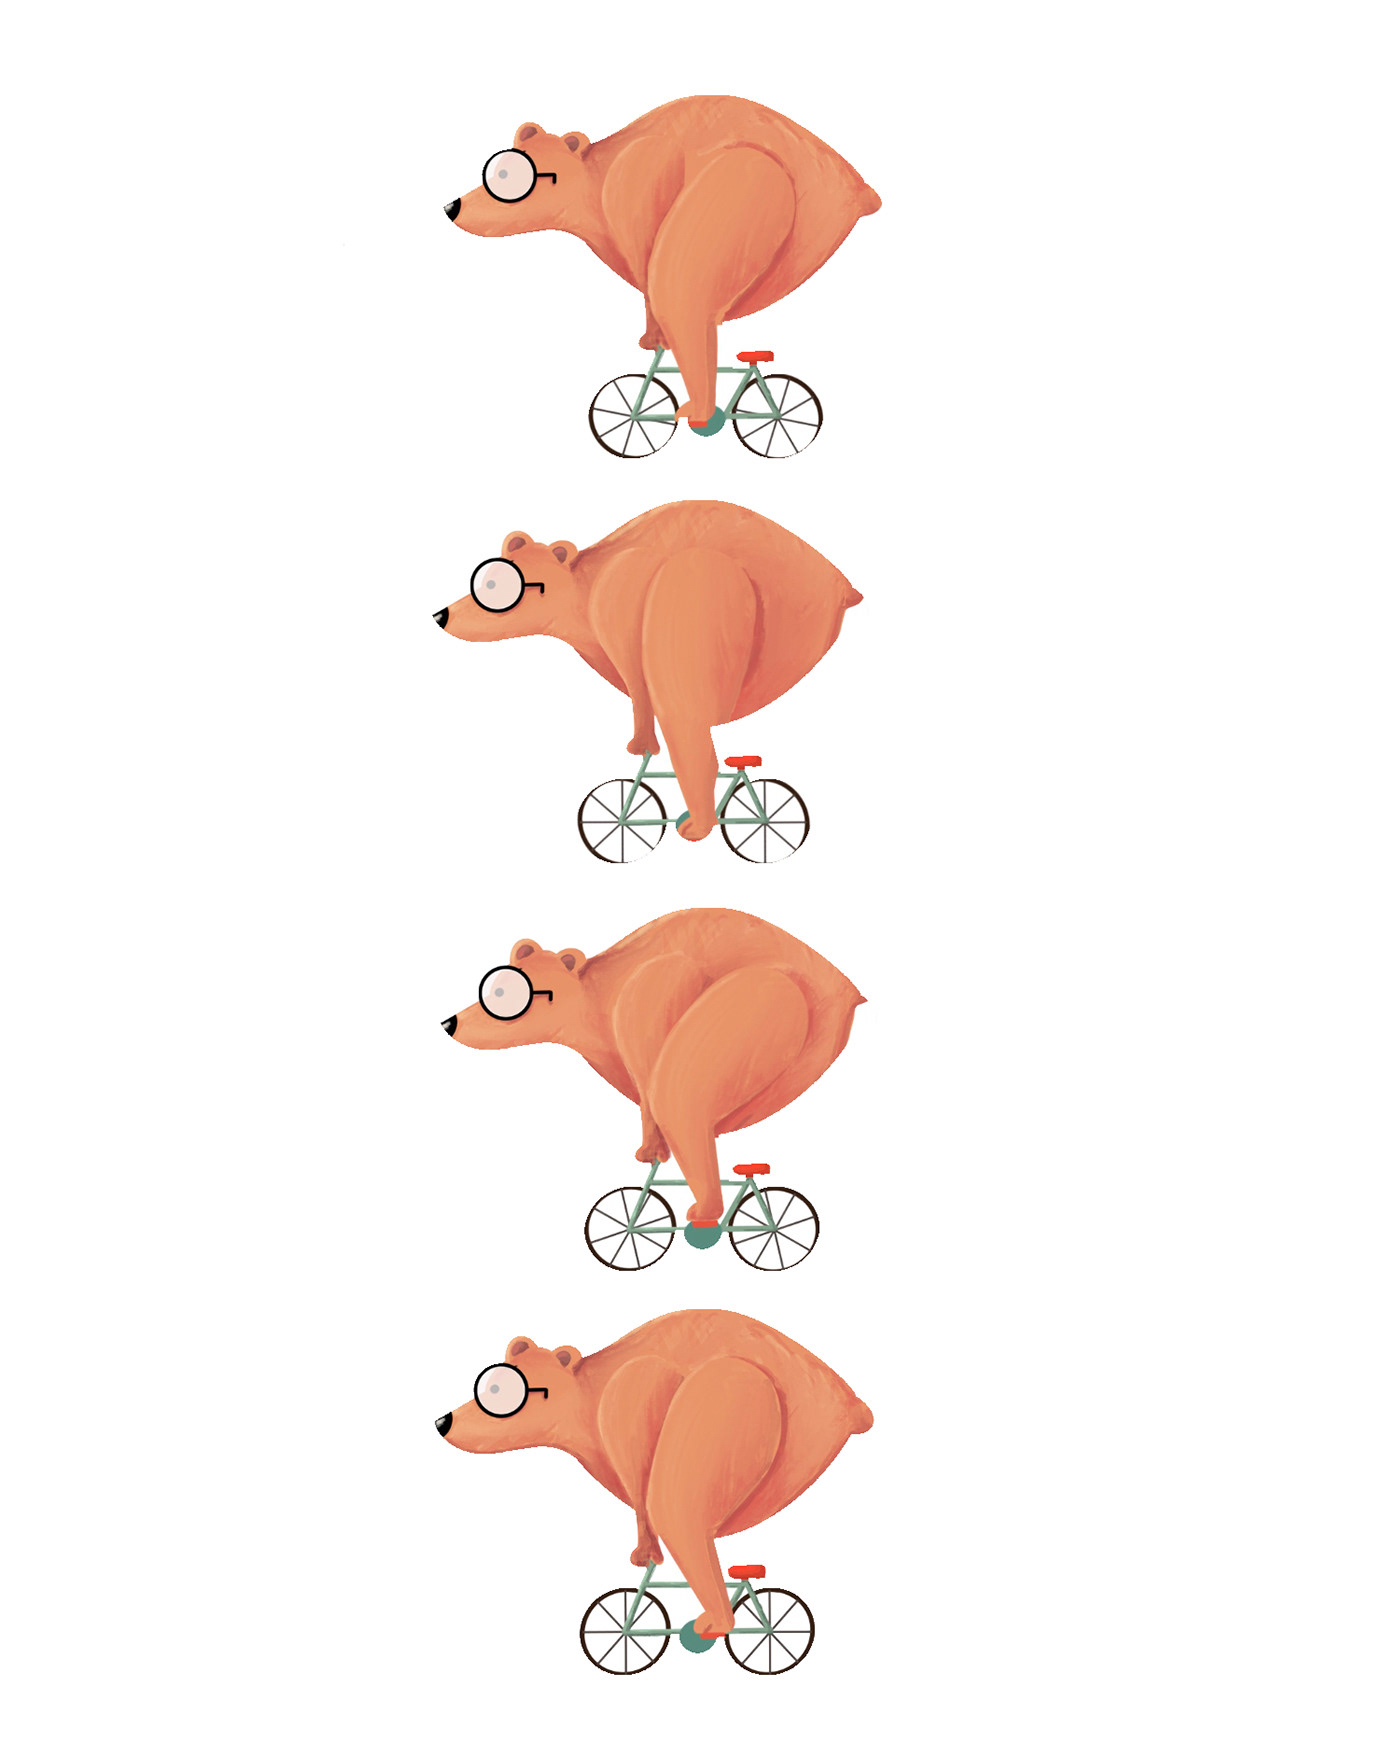 animation  bear Bicycle Bike exercise gif ILLUSTRATION  sports